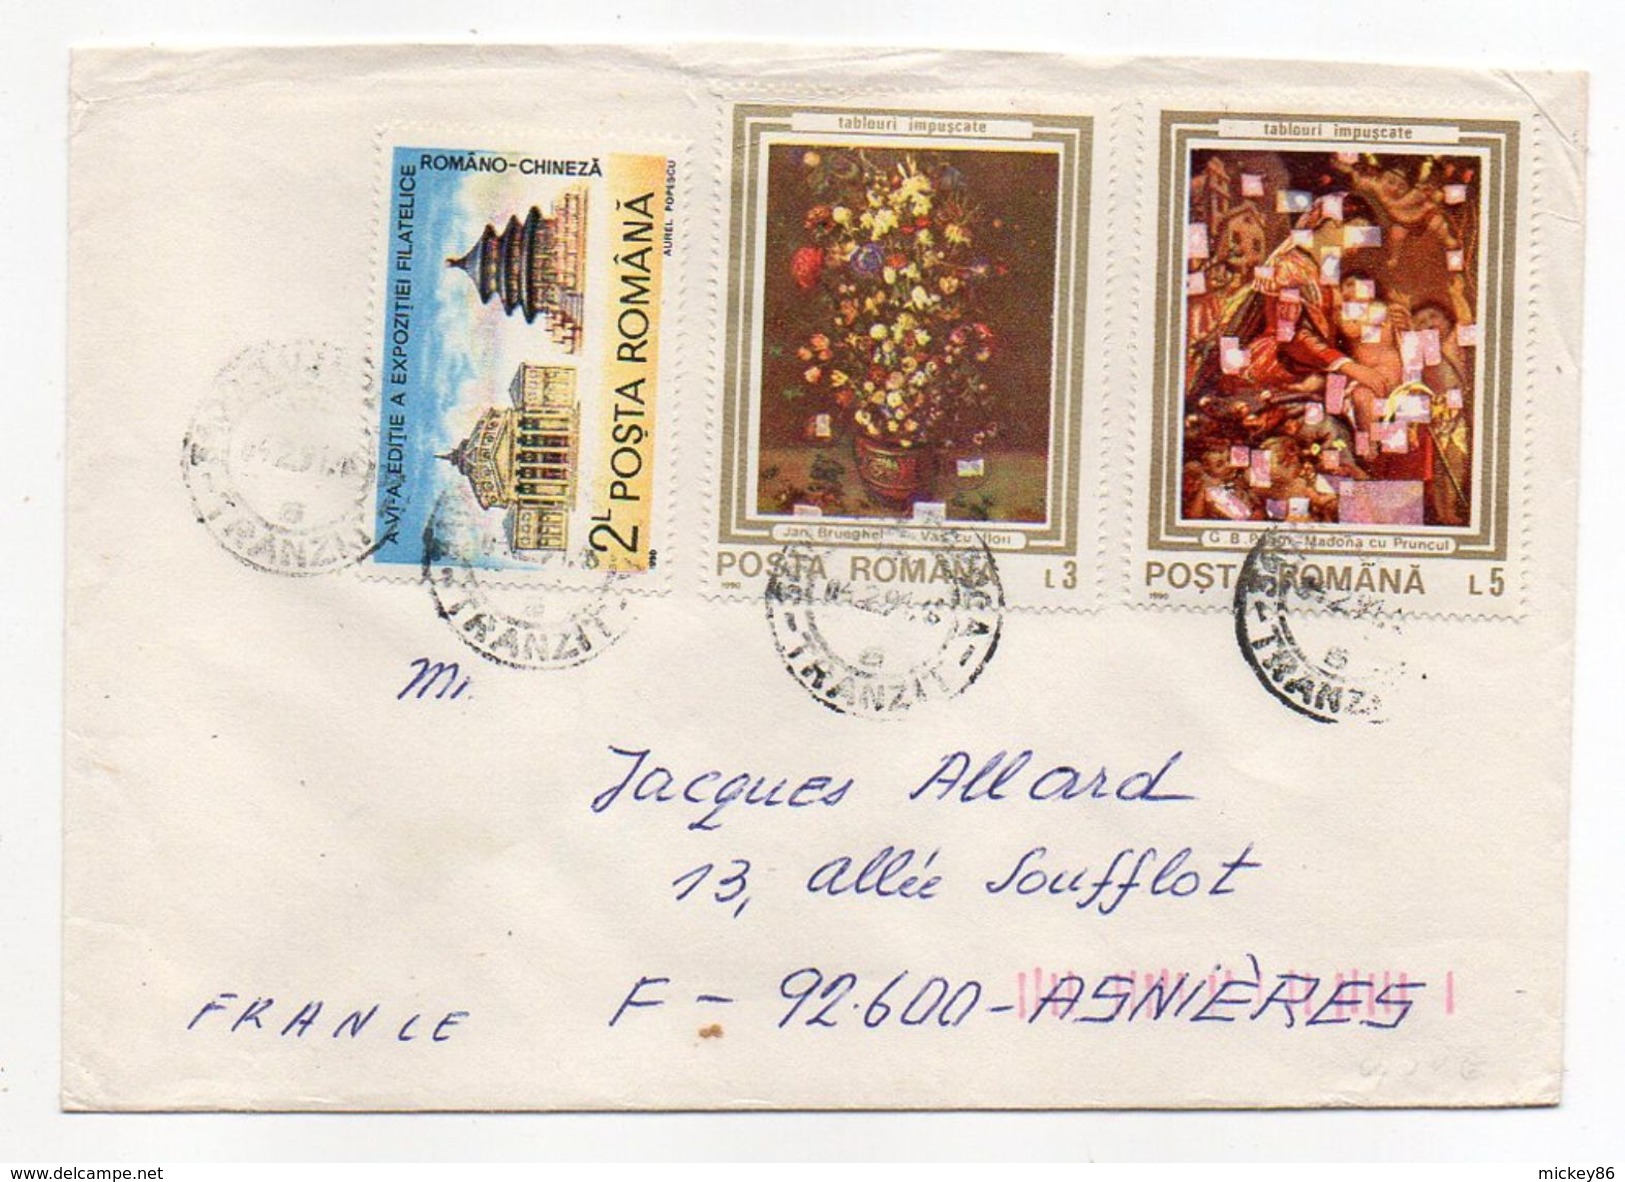 Roumanie-1990-Lettre De CLUJ-NAPOCA Pour ASNIERES-92(France) -beaux Timbres  -cachet CLUJ - Briefe U. Dokumente